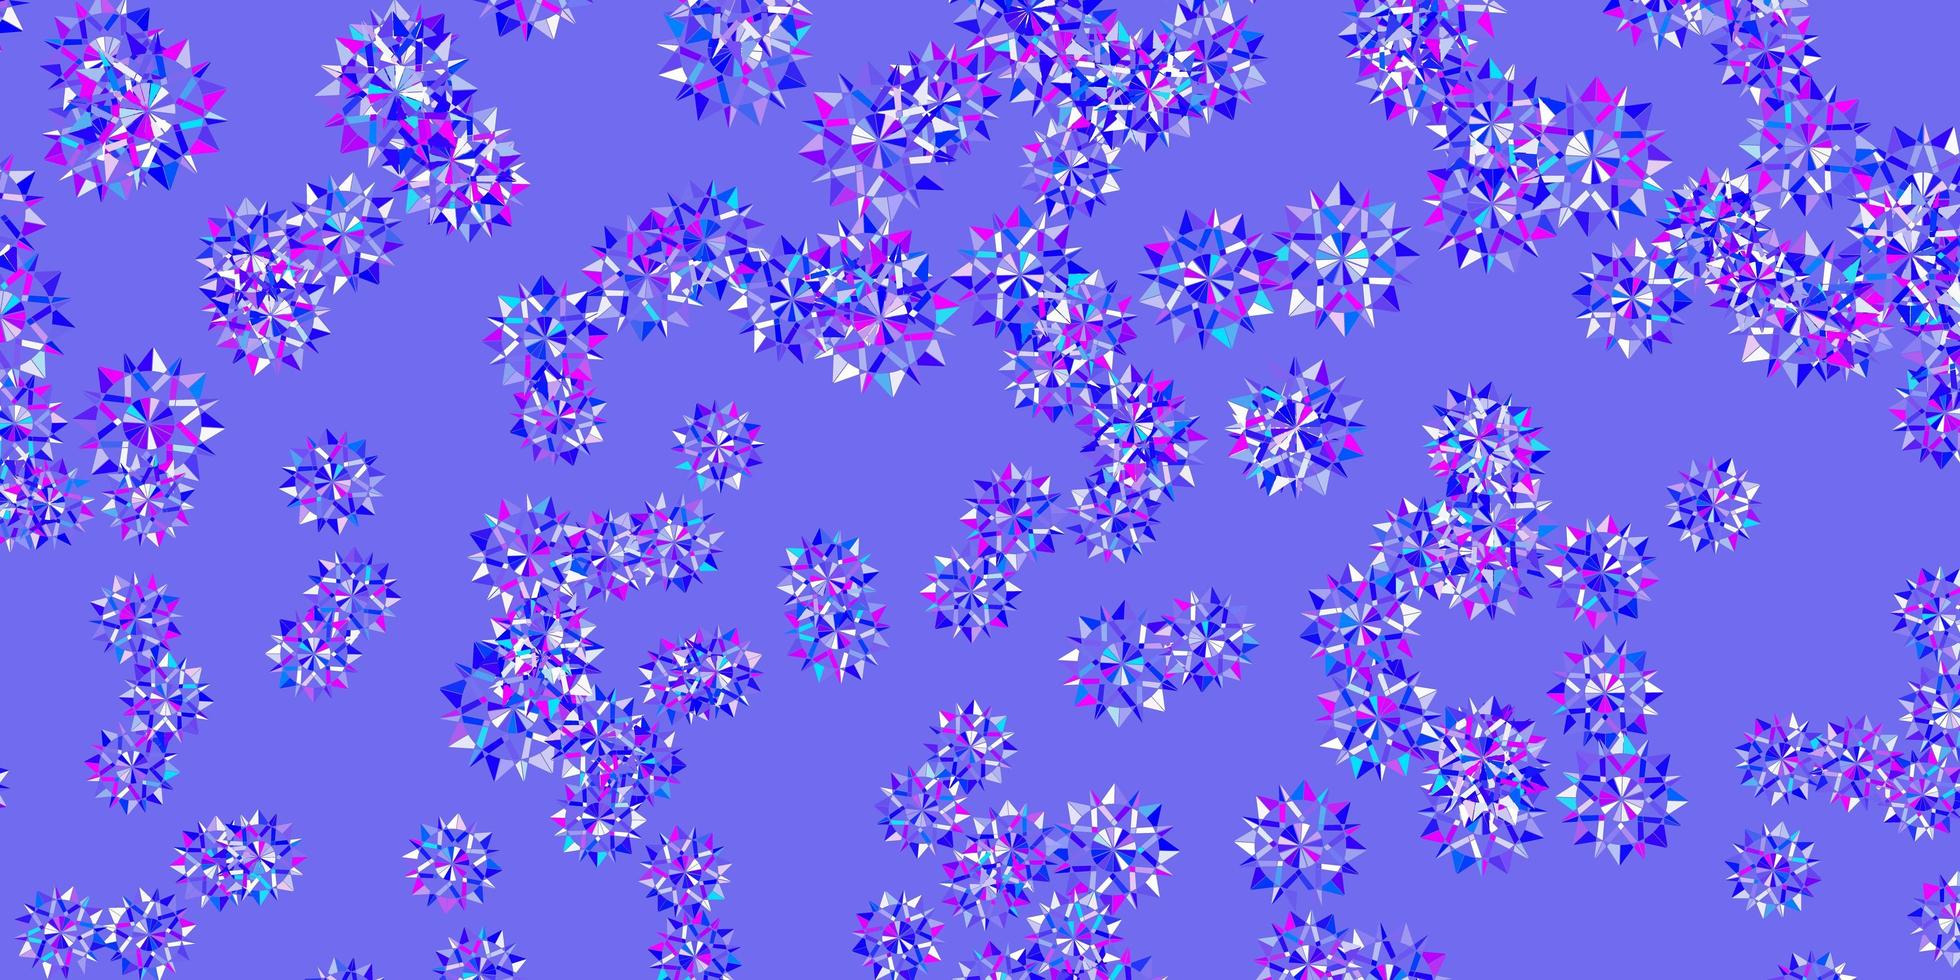 modelo de vetor azul rosa claro com flocos de neve de gelo